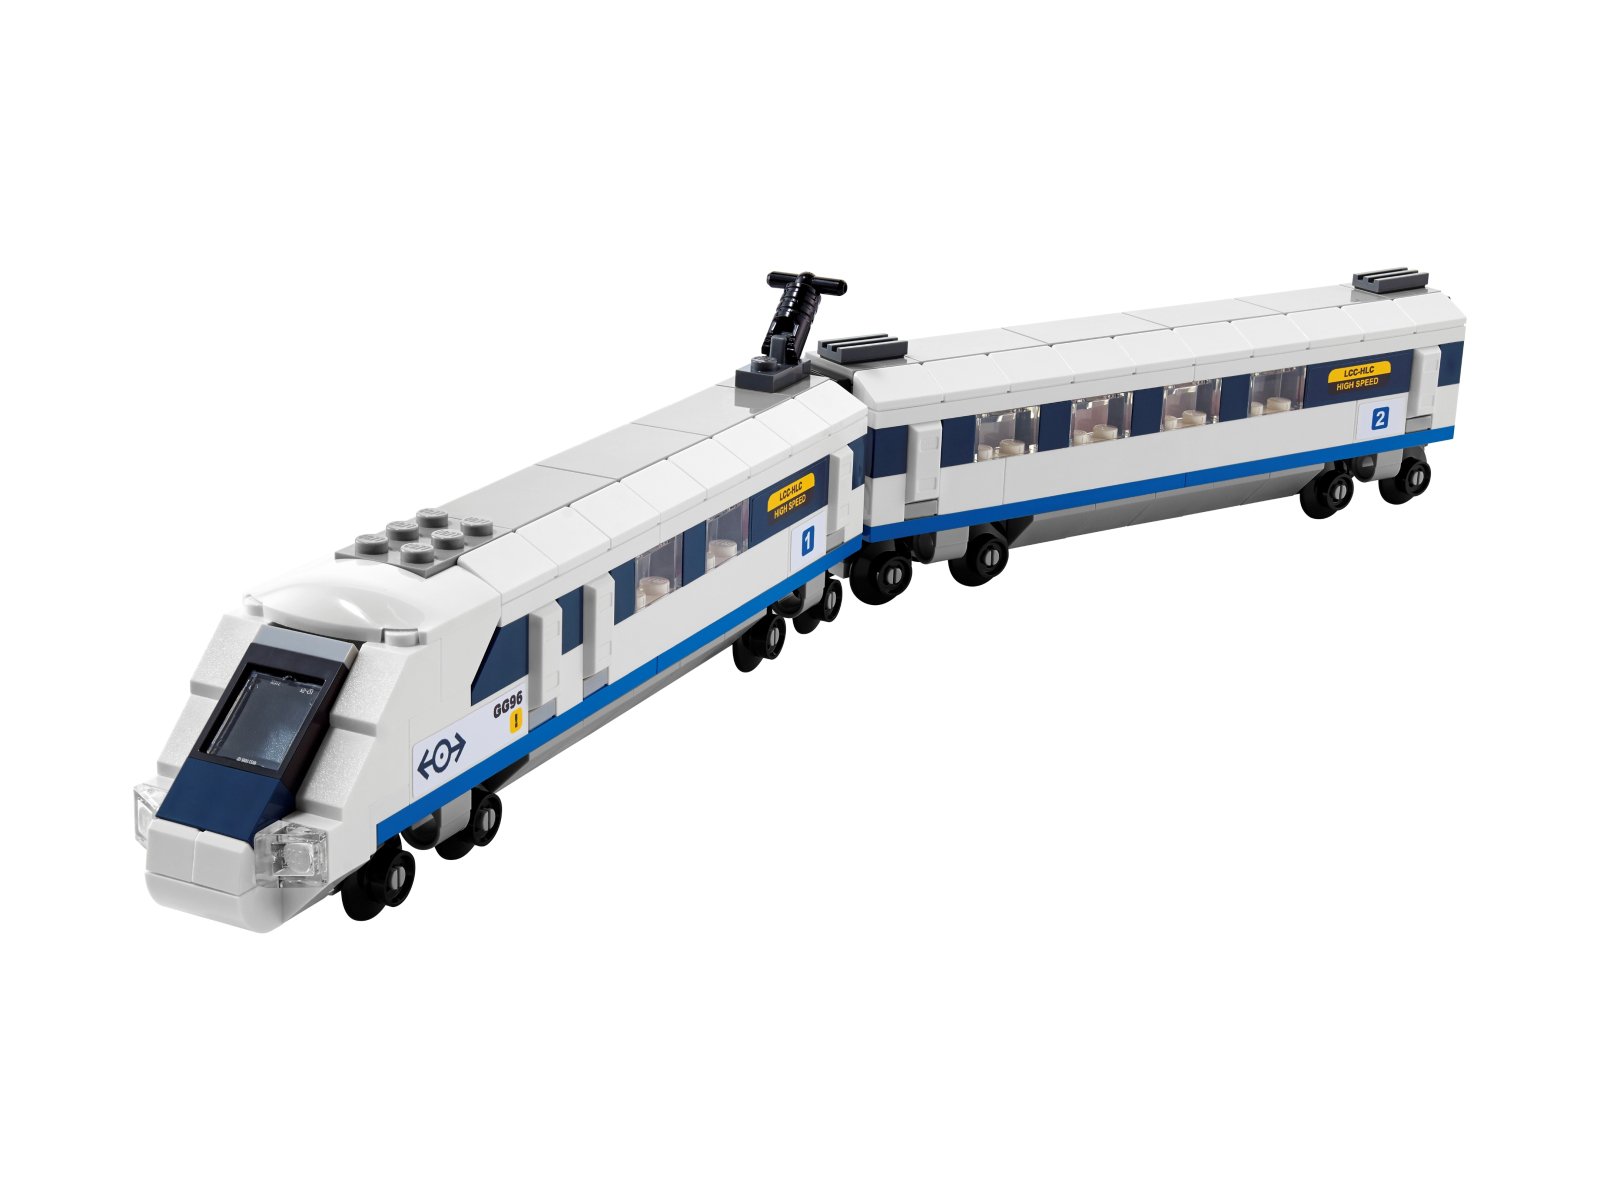 LEGO Creator 40518 Pociąg szybkobieżny